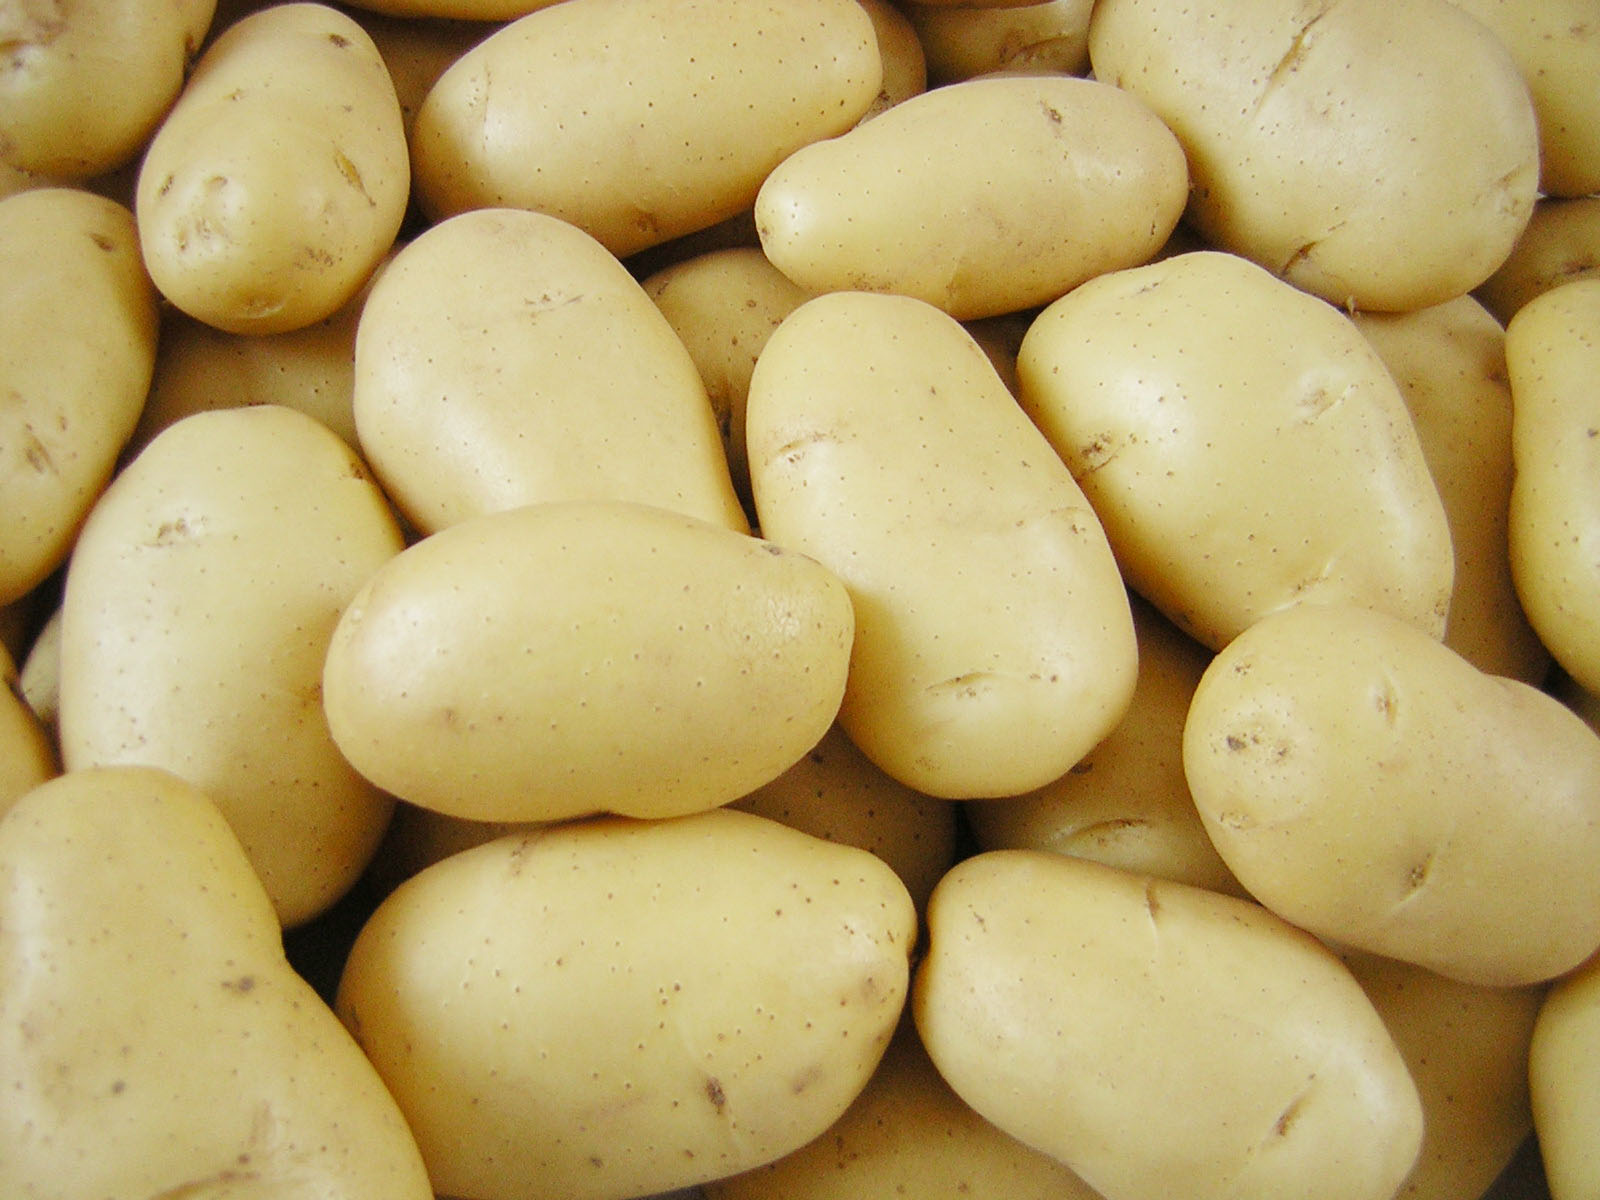 دام برس : الاقتصاد توقف تصدير البطاطا لمدة شهرين ونصف